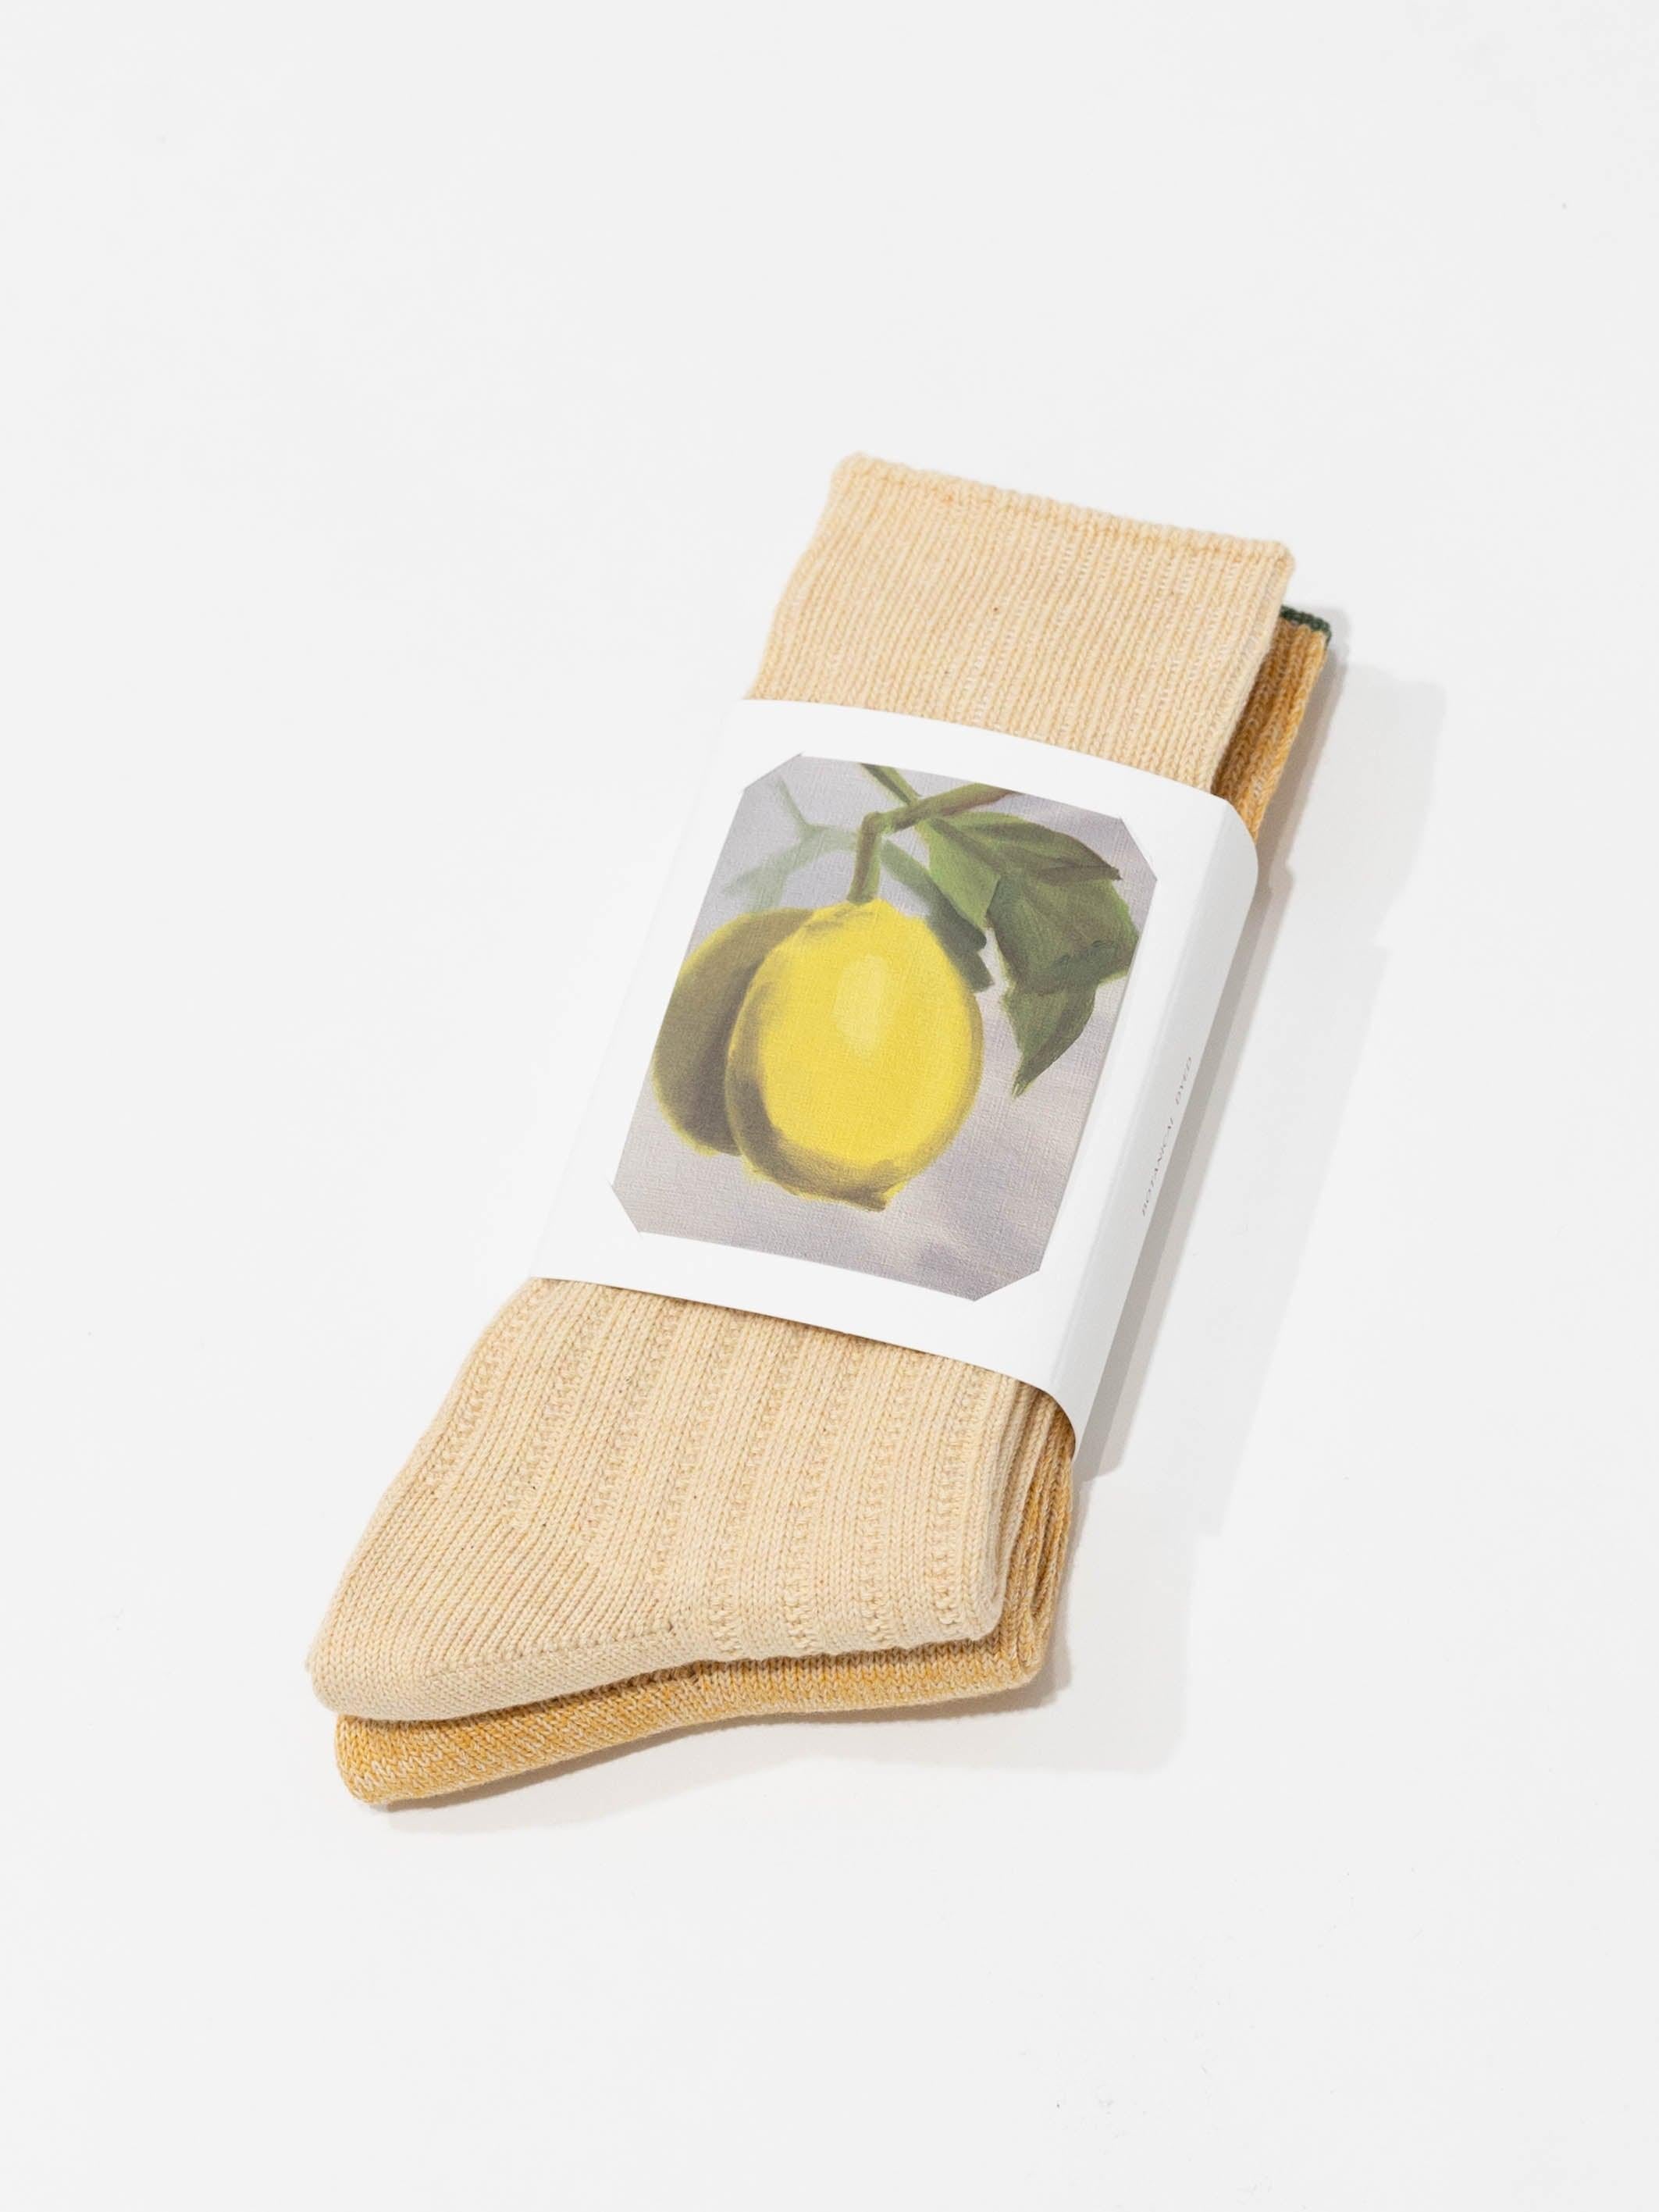 Namu Shop - Babaco 2 Pairs of Botanical Dyed Organic Cotton Socks - Lemon, Strawberry